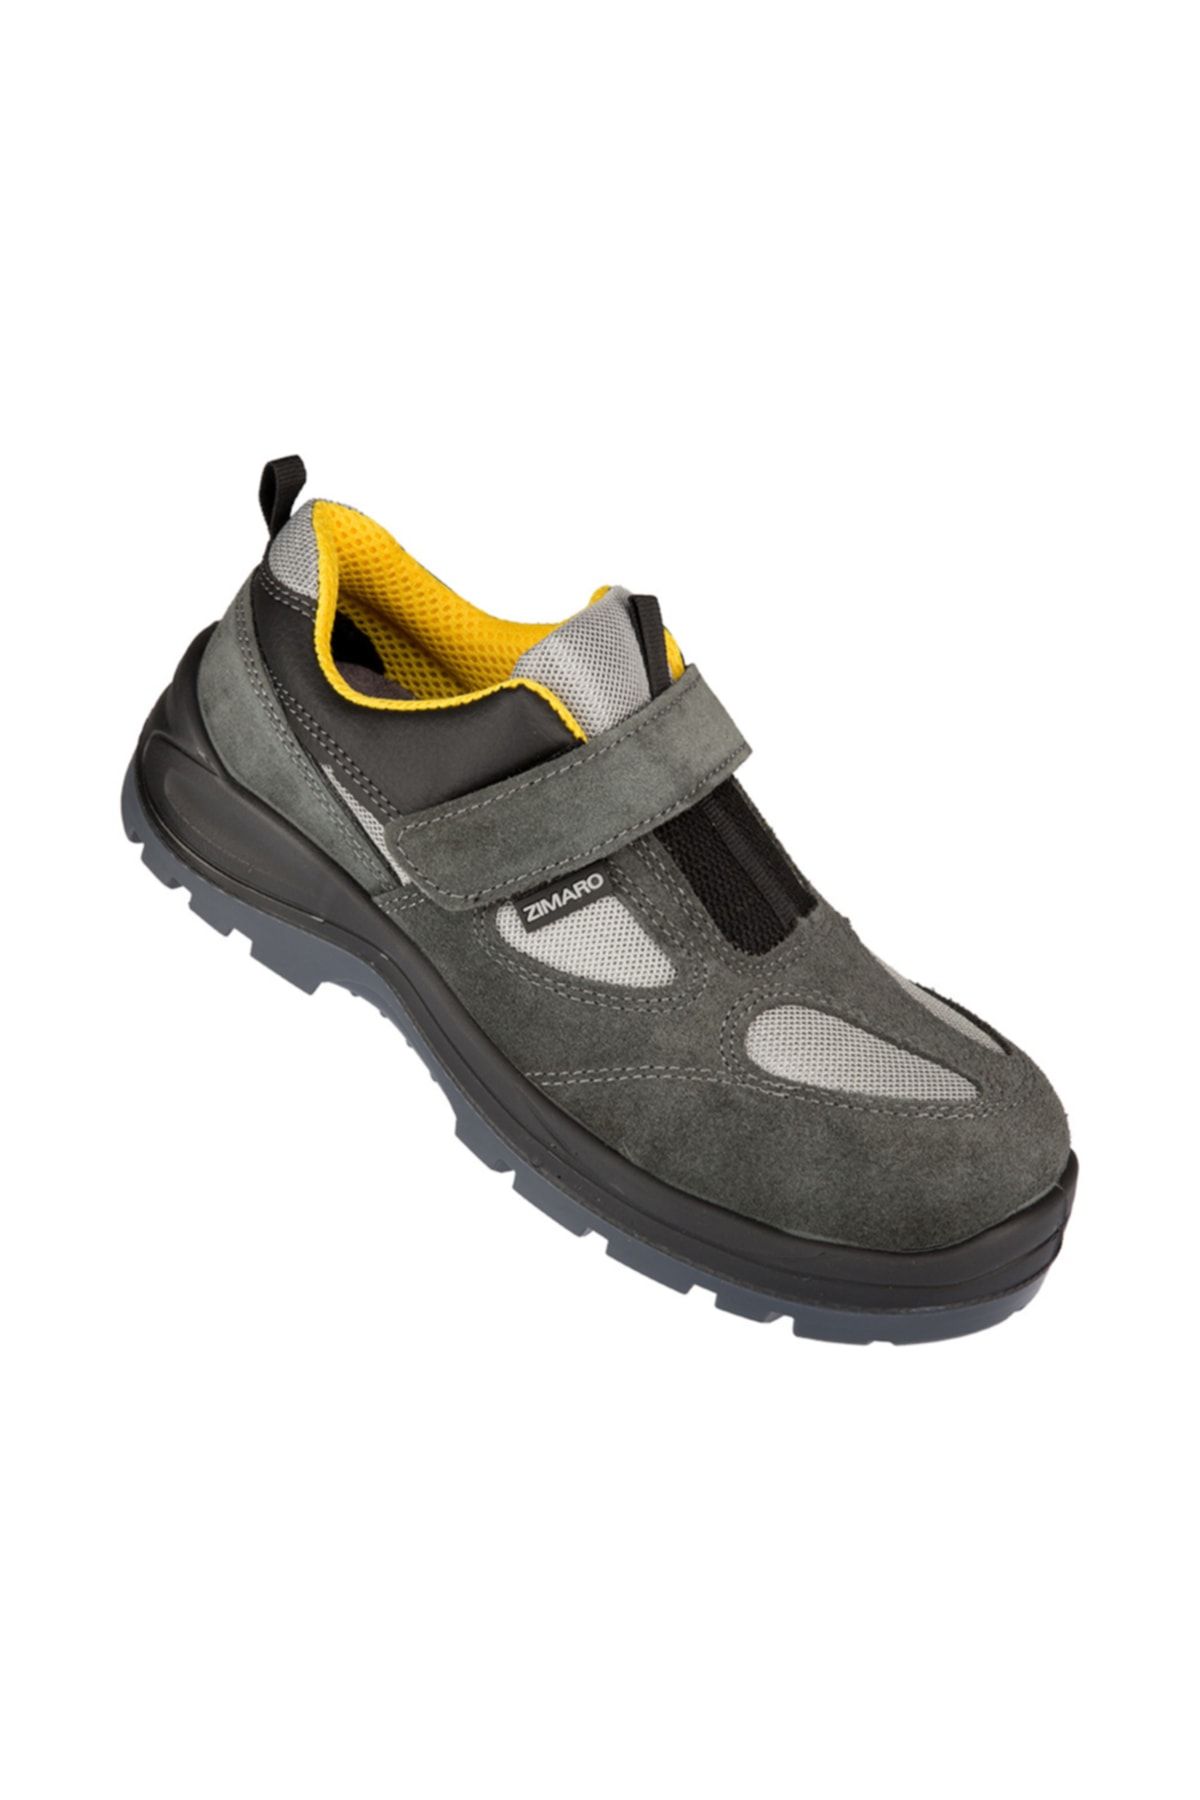 Zimaro Iş Güvenliği Ayakkabısı Z1.0 S1 (çelik Burun, Kaymaz Taban)